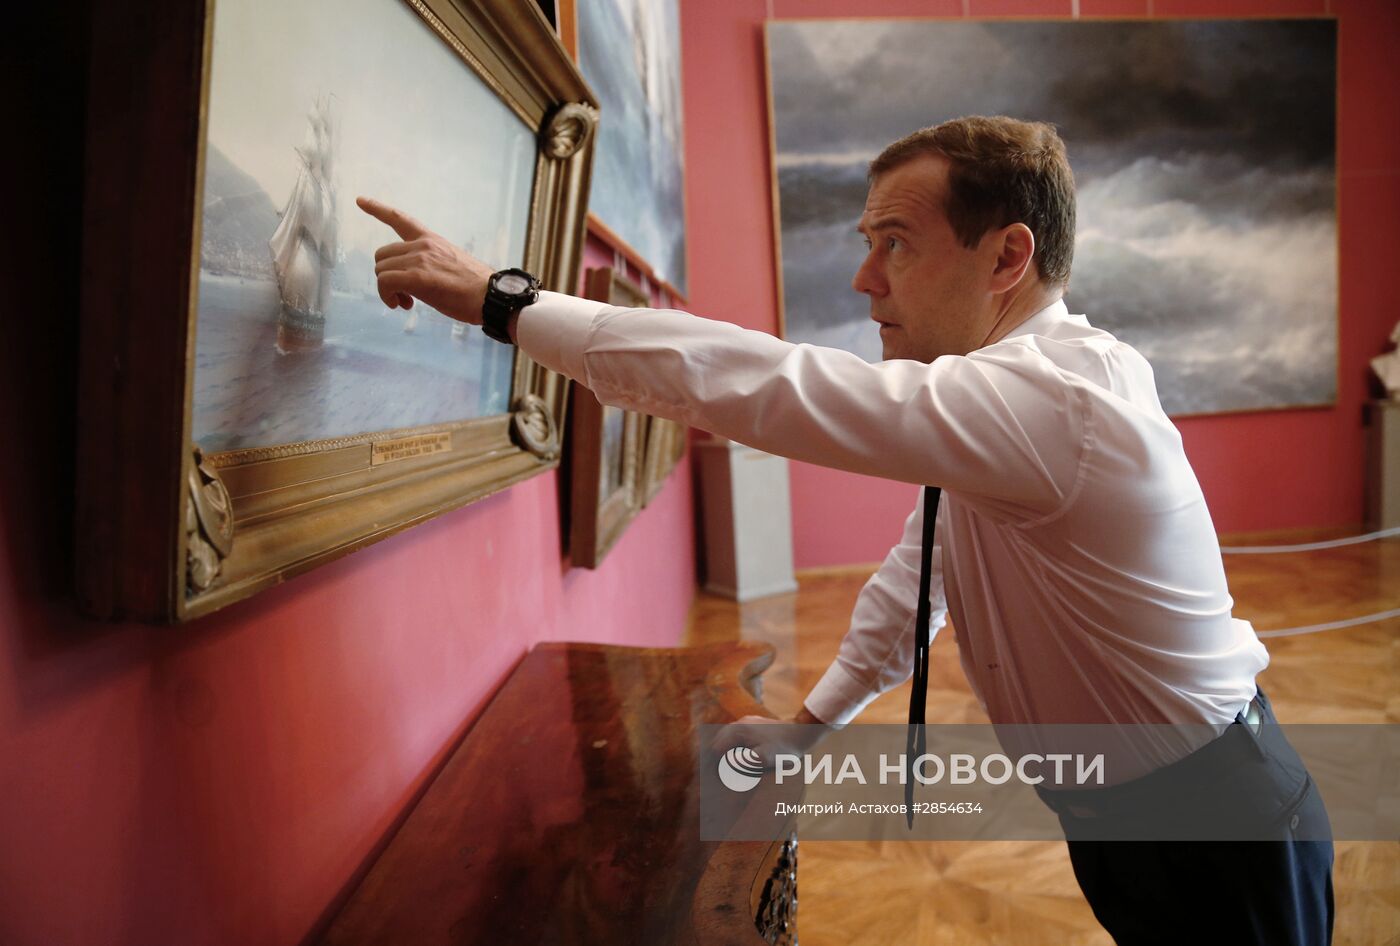 Рабочая поездка премьер-министра РФ Д. Медведева в Крымский федеральный округ. День второй